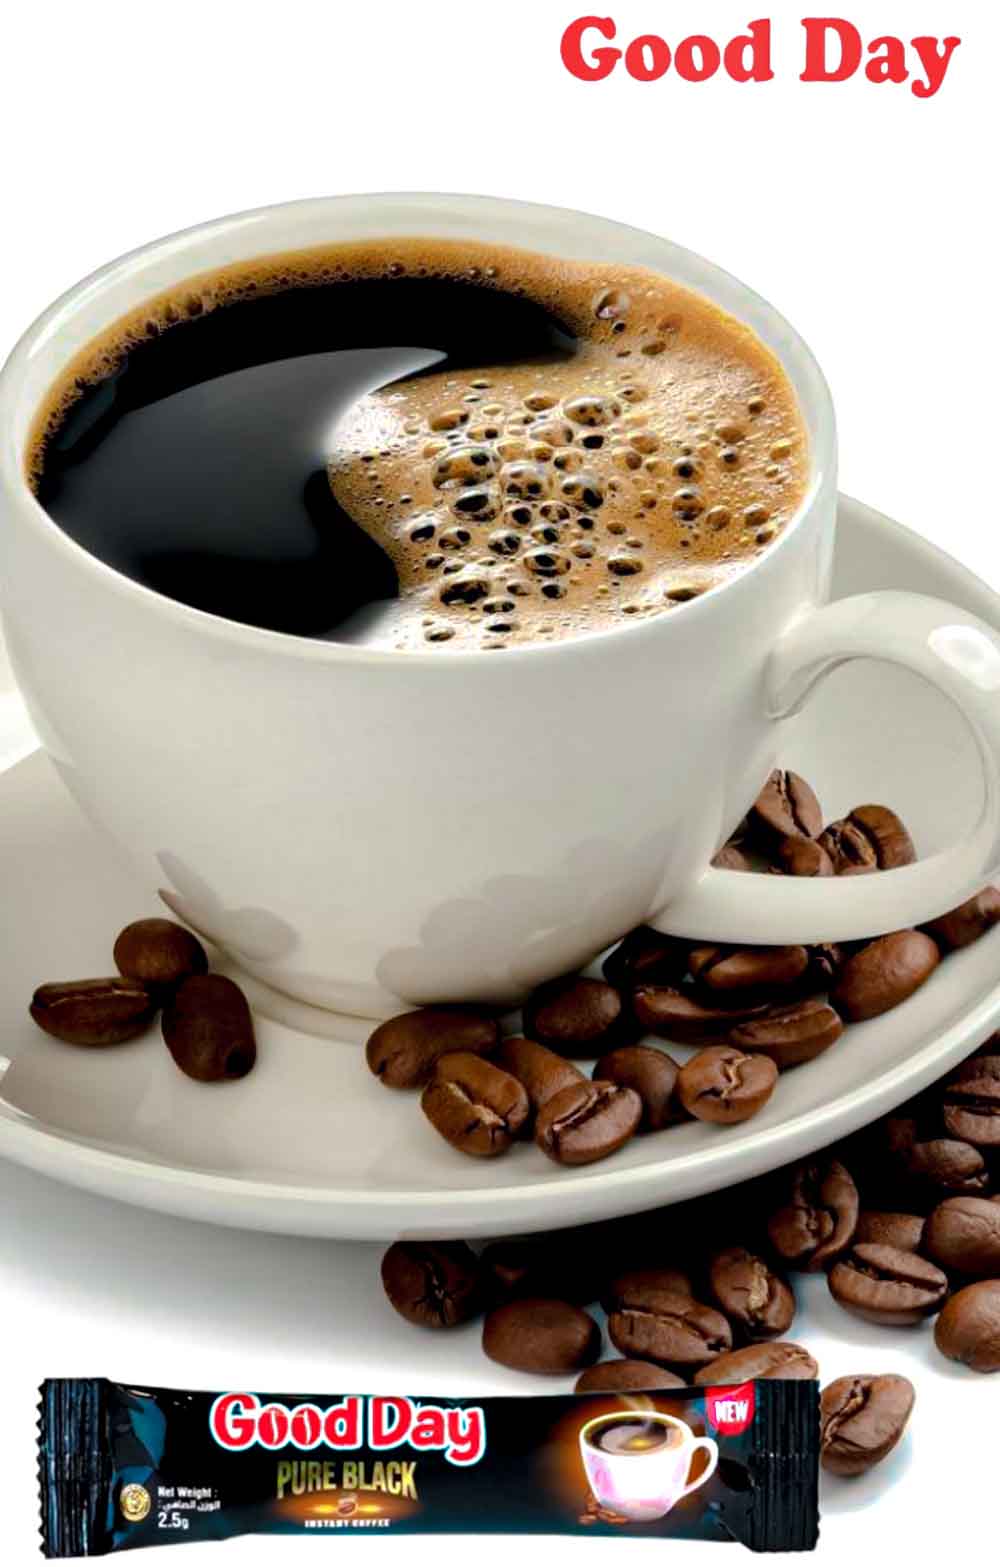 قهوه فوری گود دی good day با طعم بی نظیر و انرژی بخش